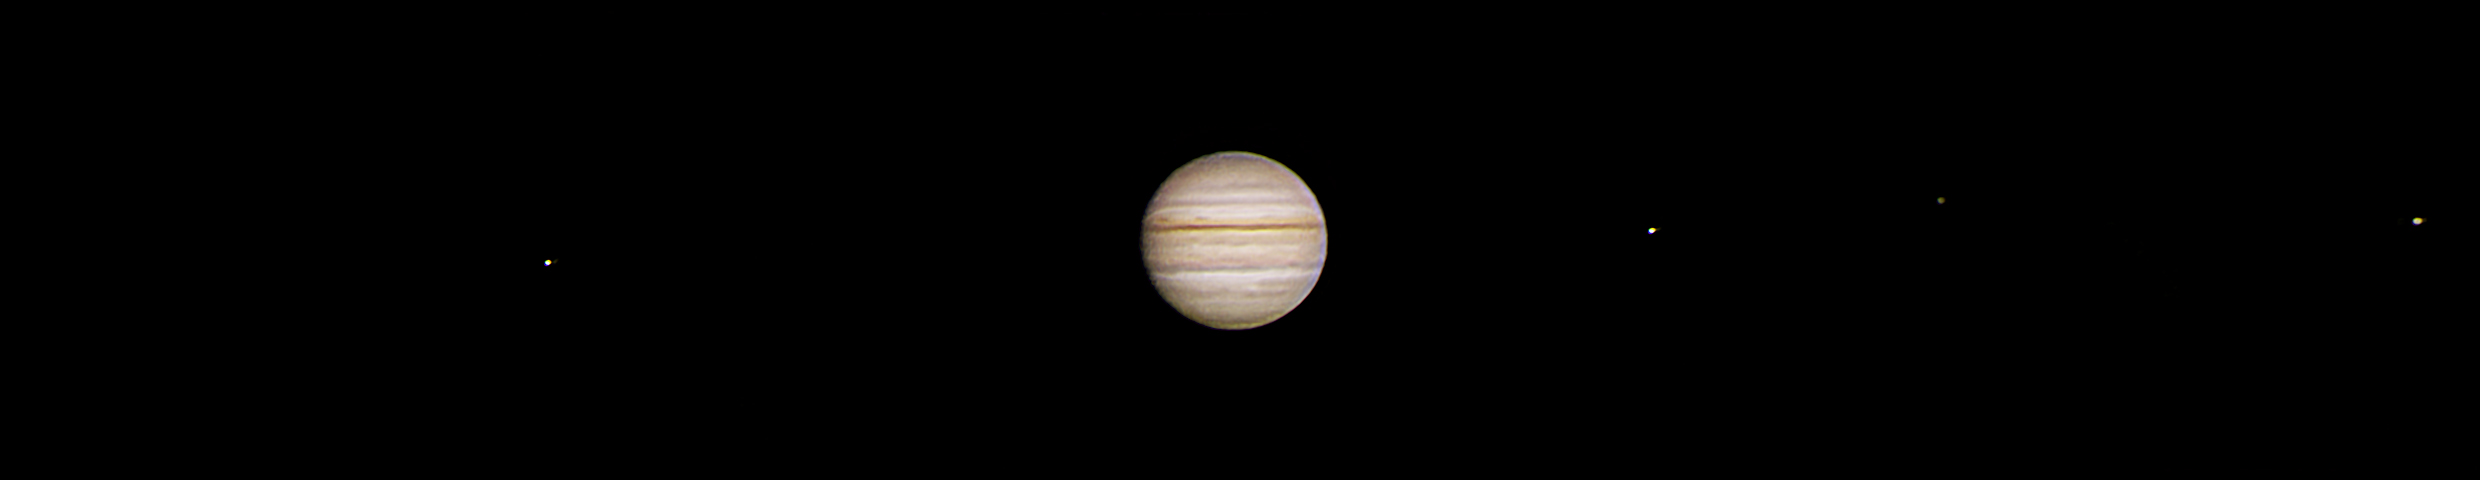 2021-10-28_20-05_Jupiter 1.jpg